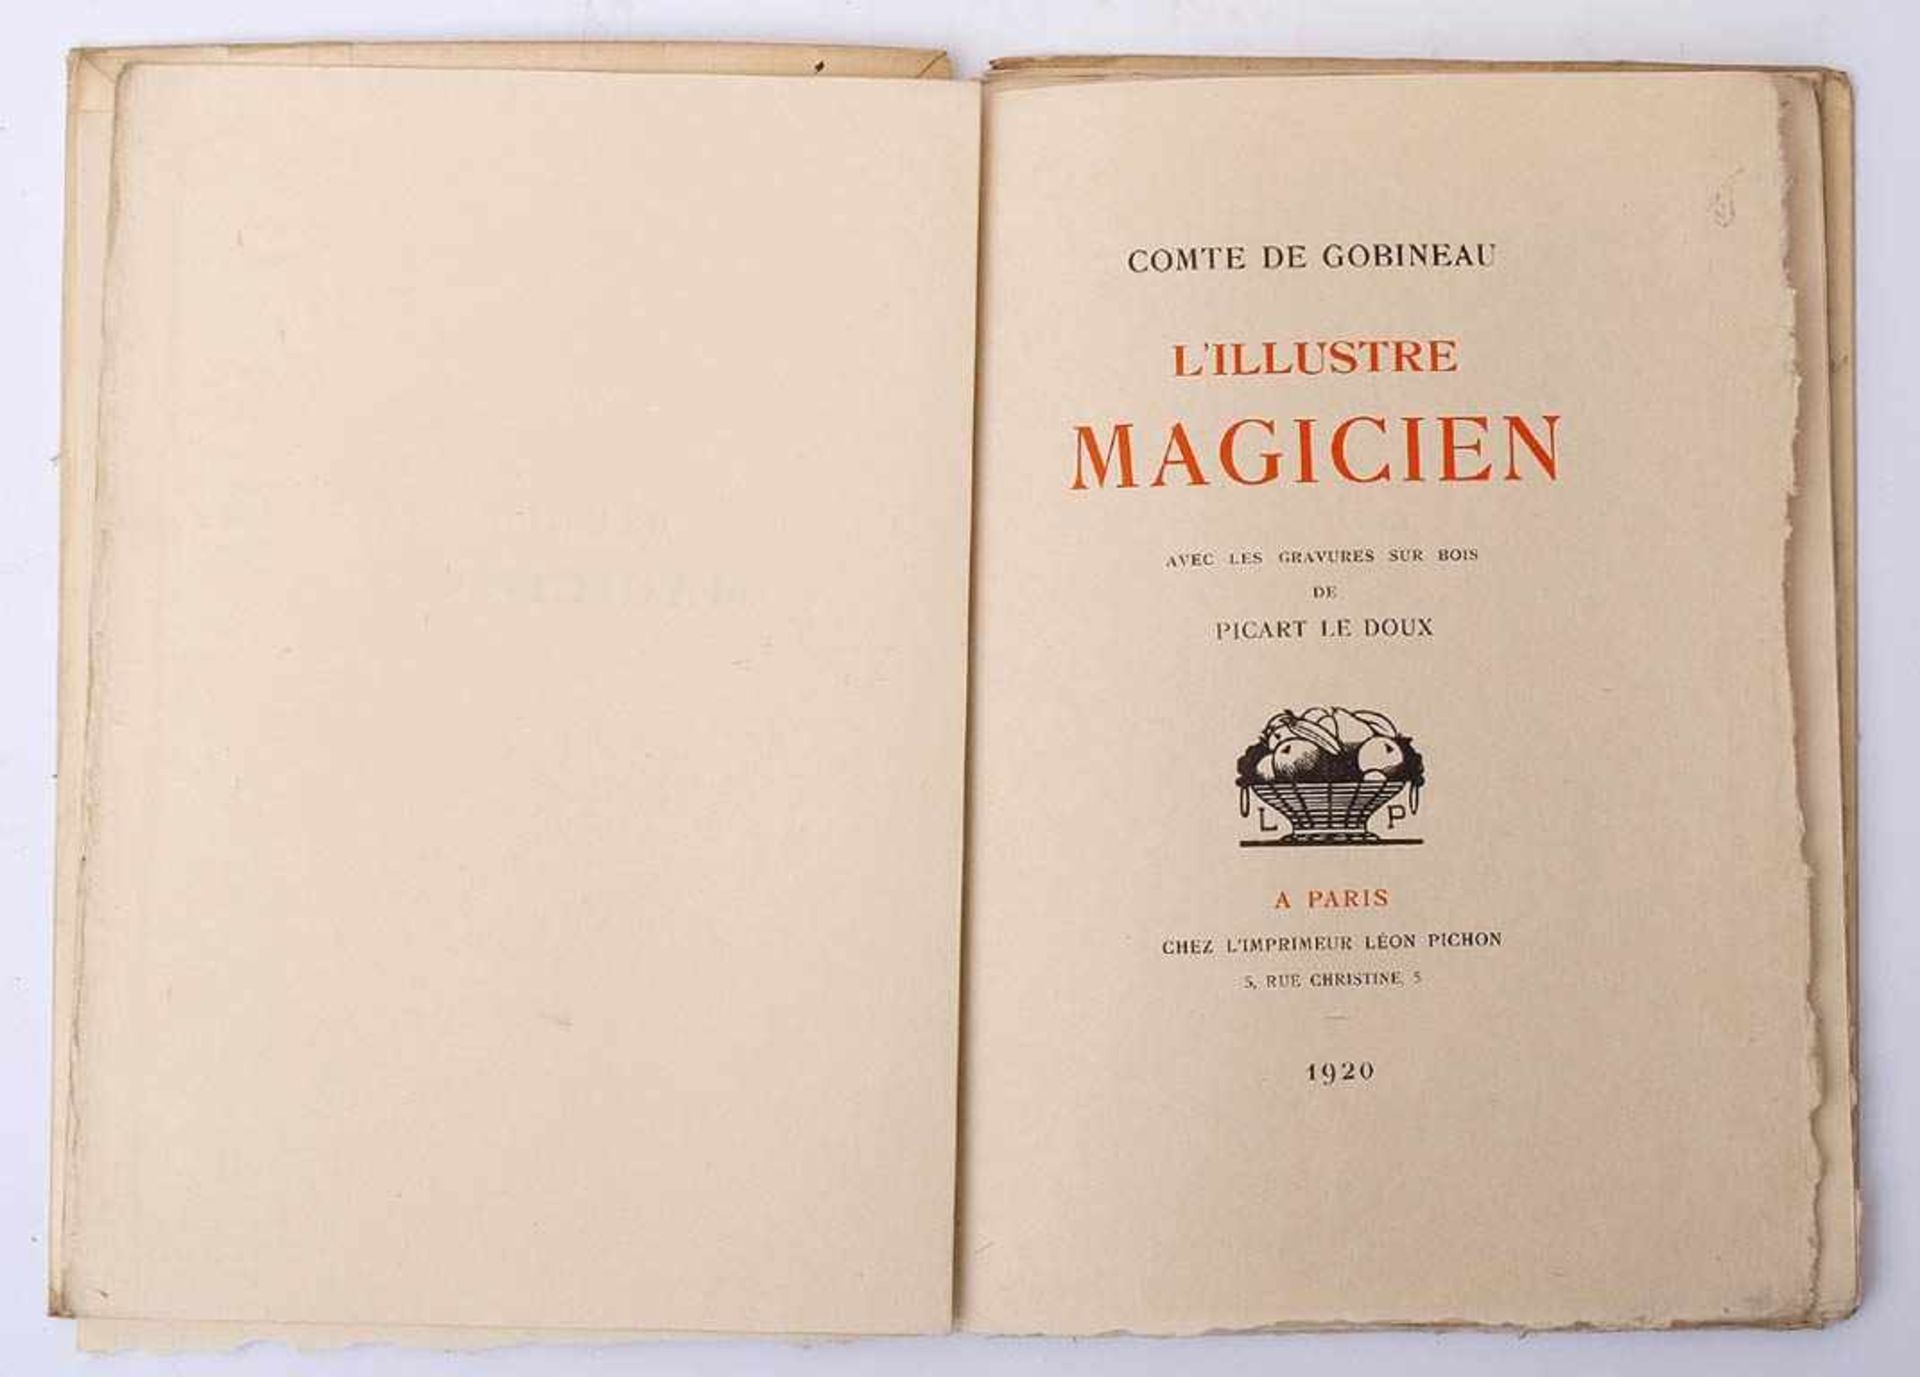 Gobineau, Comte deL' Illustre magicien, Pichon, Paris 1920. Mit zahlreichen Holzschnitten von Picard